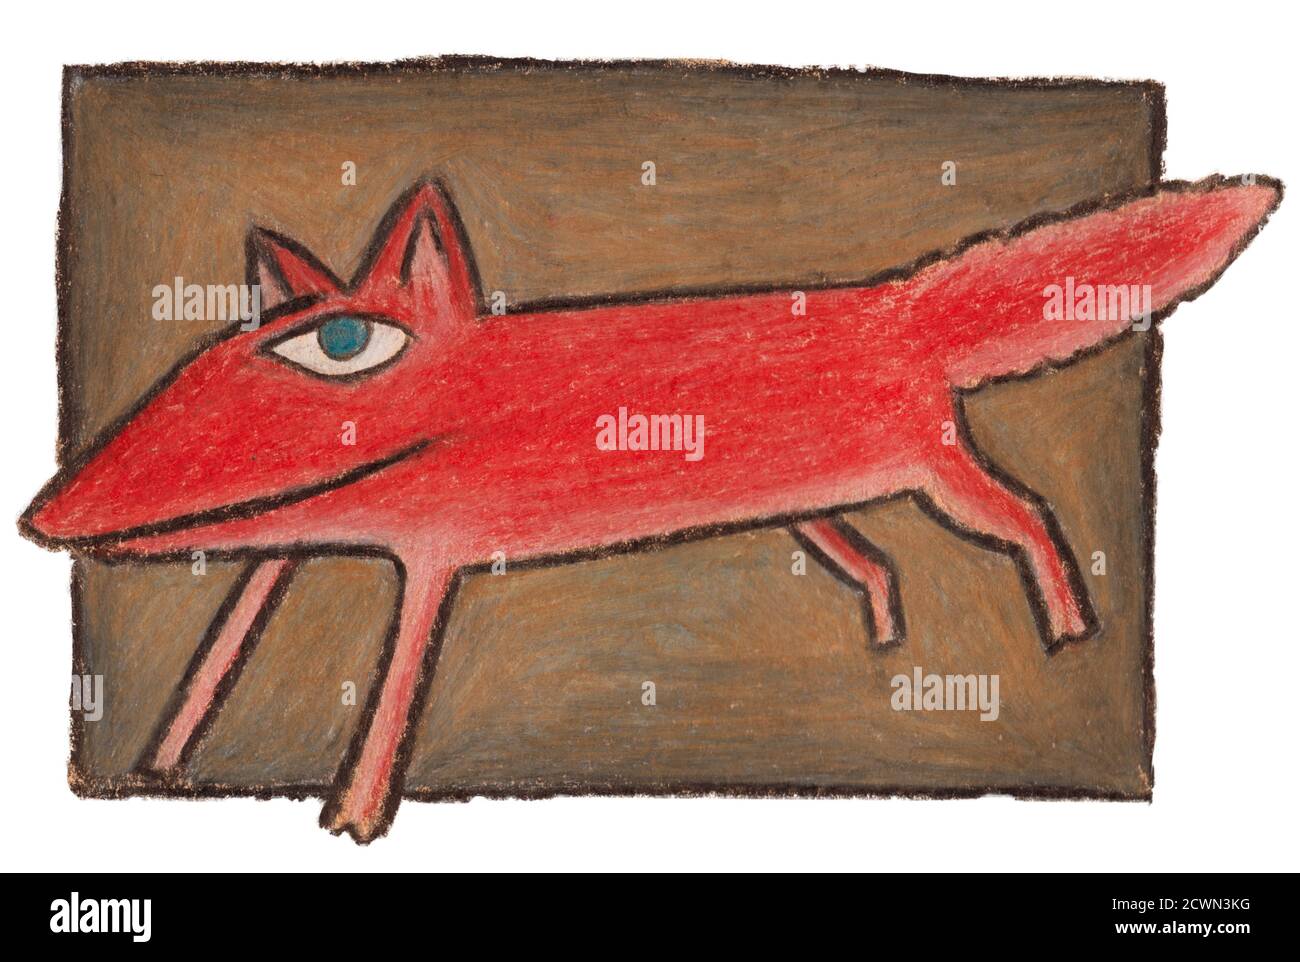 Ilustración hecha con lápices de colores de un zorro rojo riendo. Foto de stock